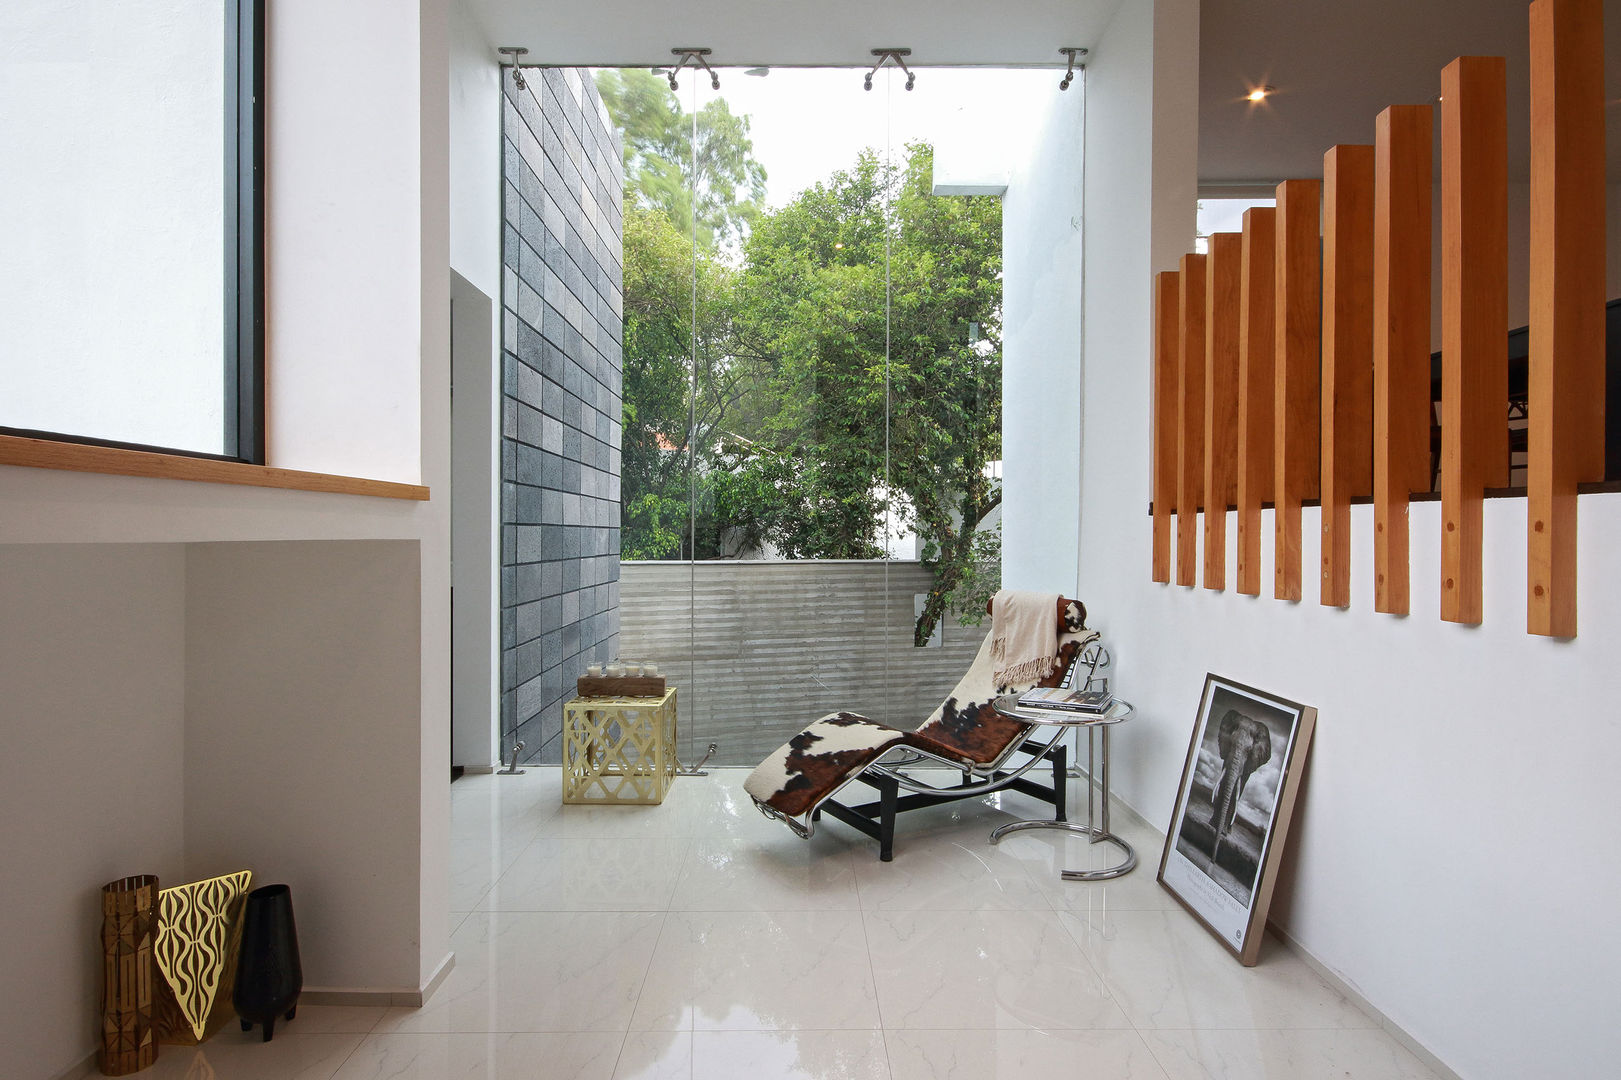 Ampliación de casa en Ciudad de Mexico - Casa BG, All Arquitectura All Arquitectura Pasillos, vestíbulos y escaleras de estilo minimalista Vidrio